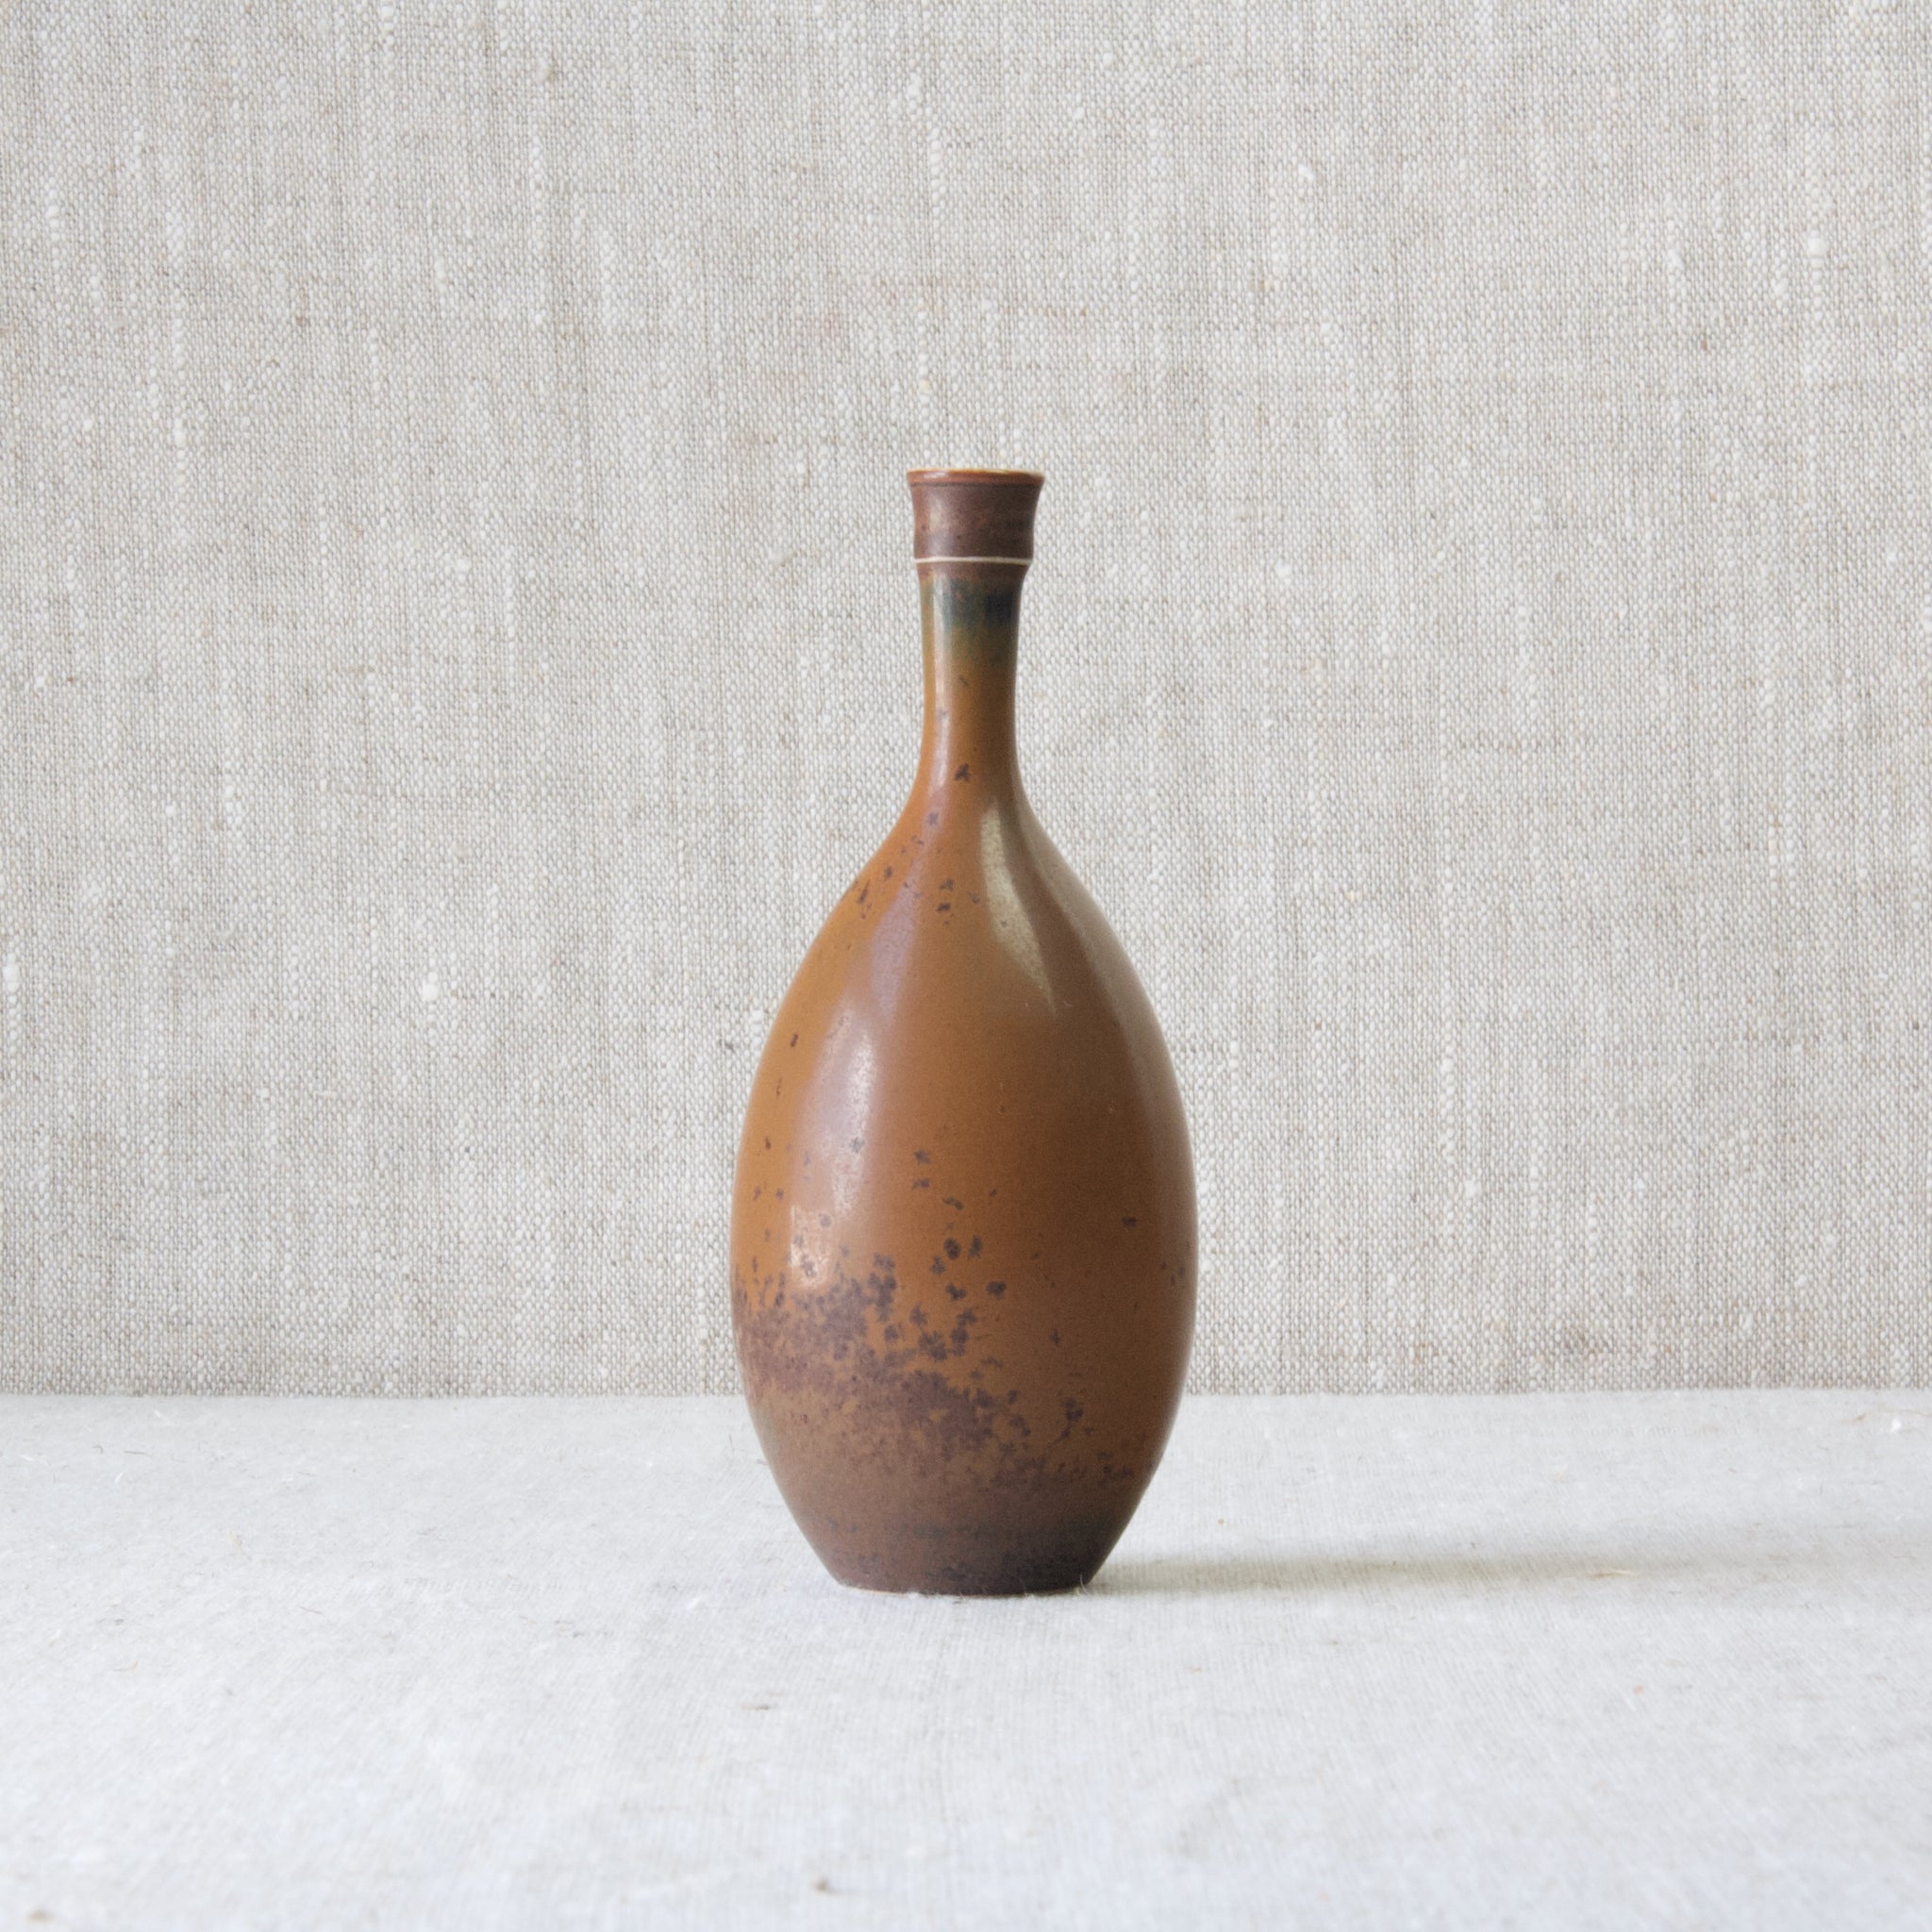 Stig Lindberg Drejargods handmade stoneware studio pottery vase, 1960's